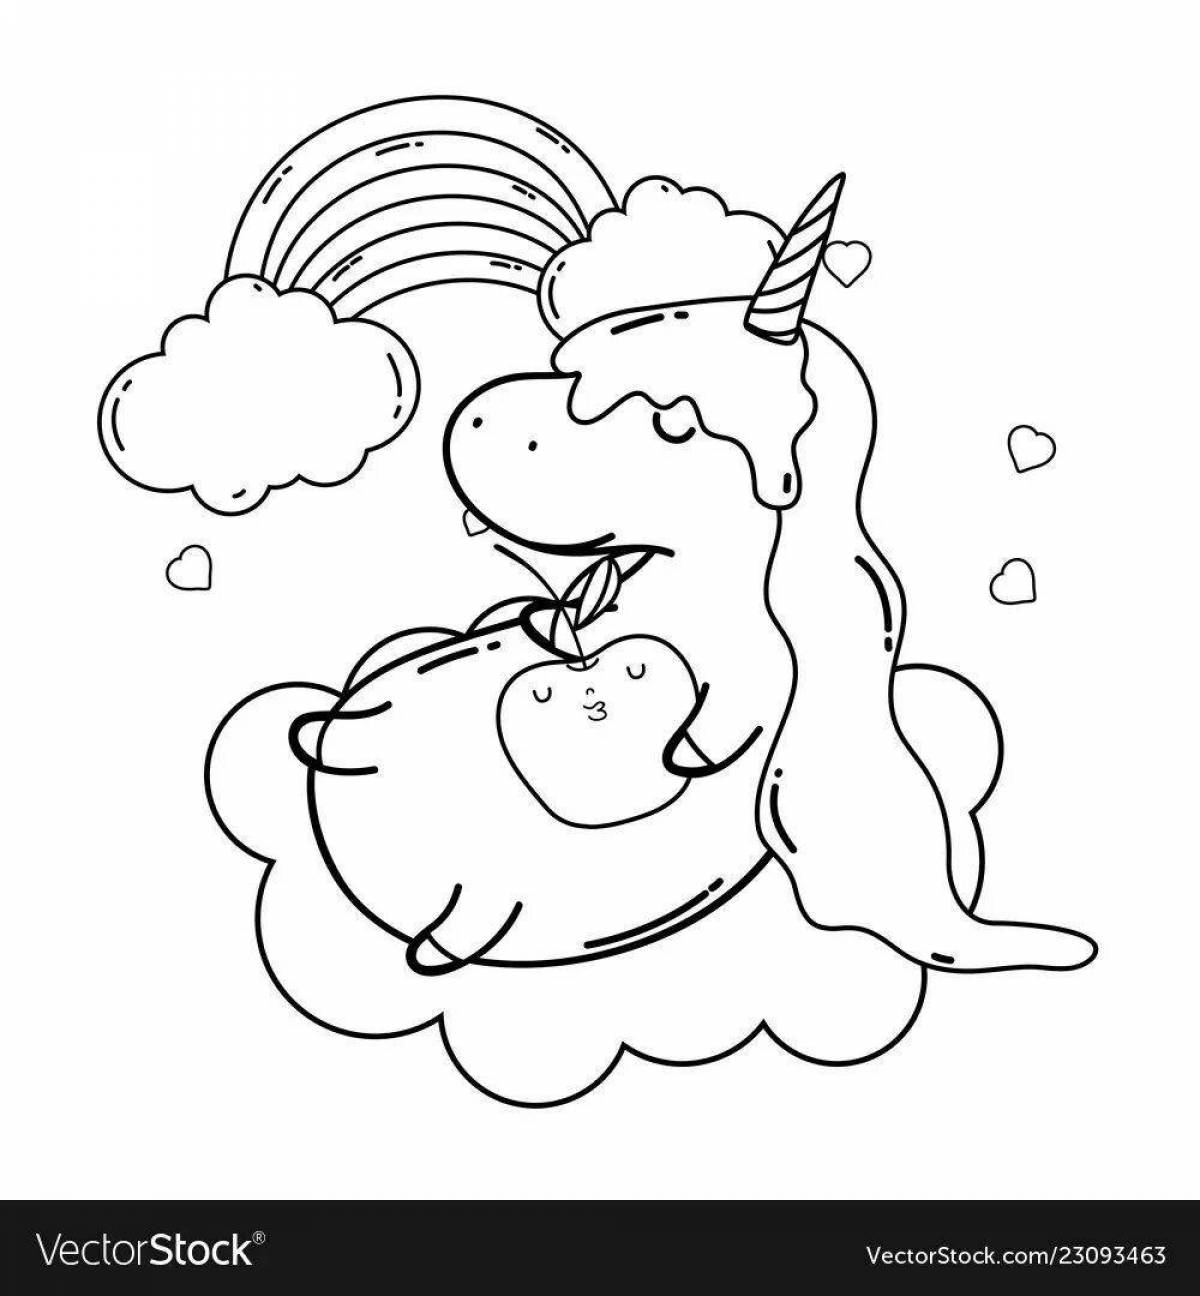 Unicorn cloud fun coloring book